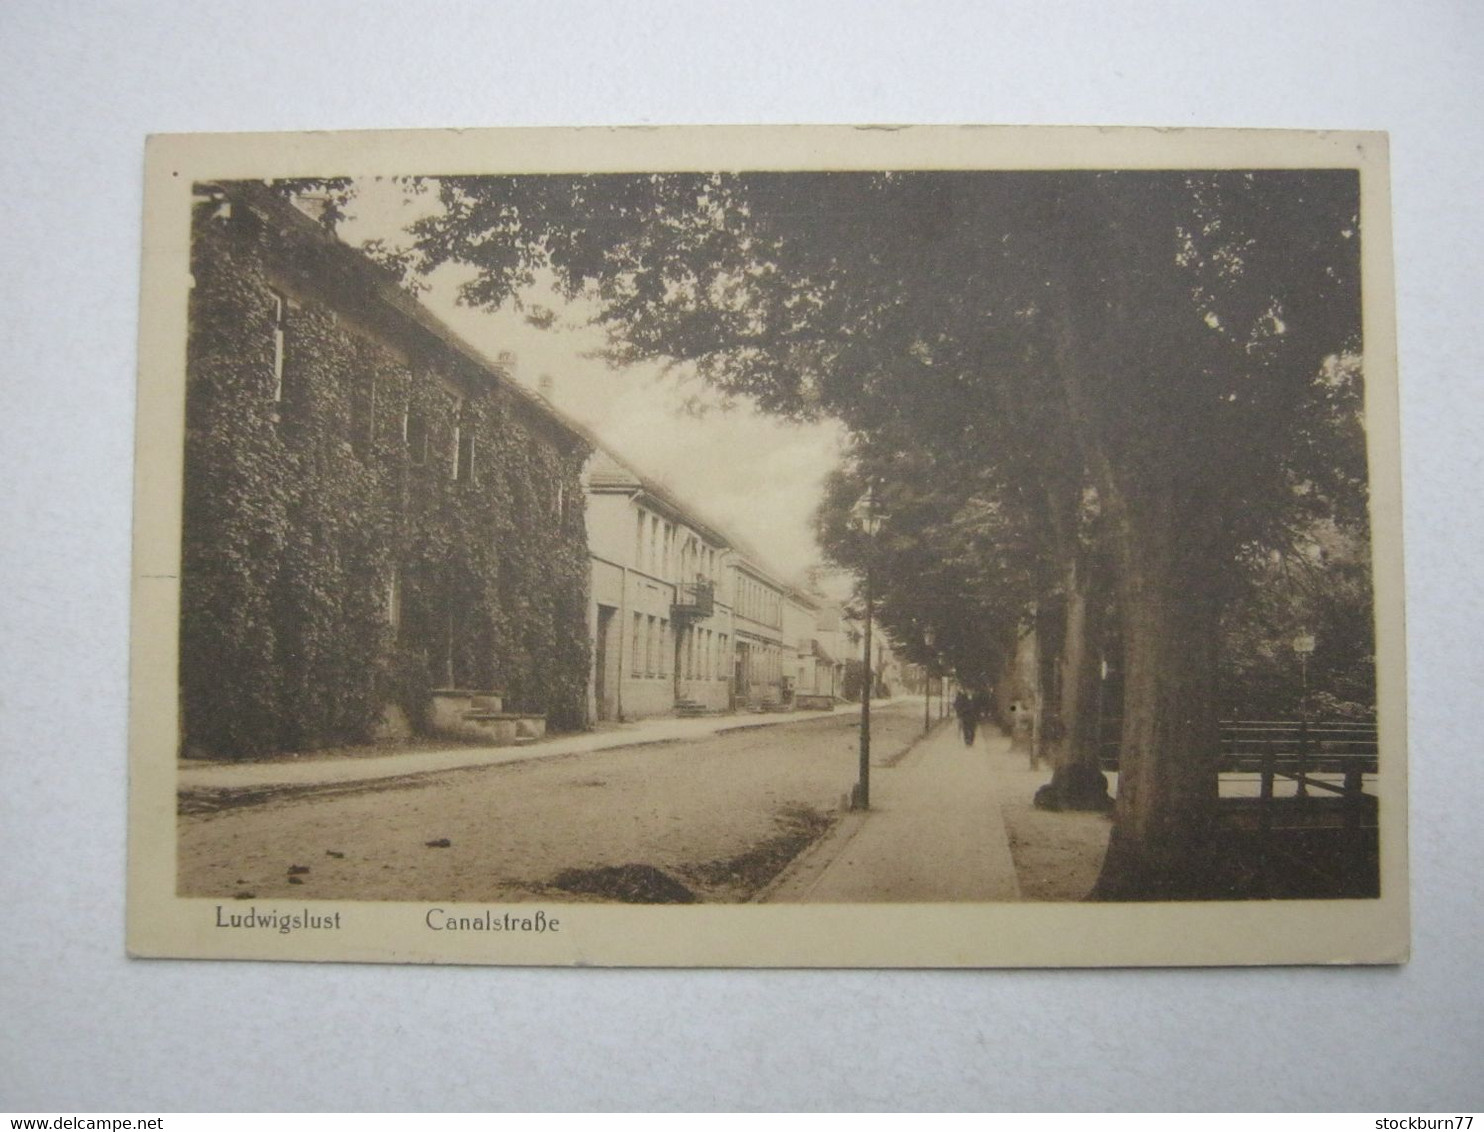 LUDWIGSLUST , Canalstrasse , Seltene Karte 1919 - Ludwigslust